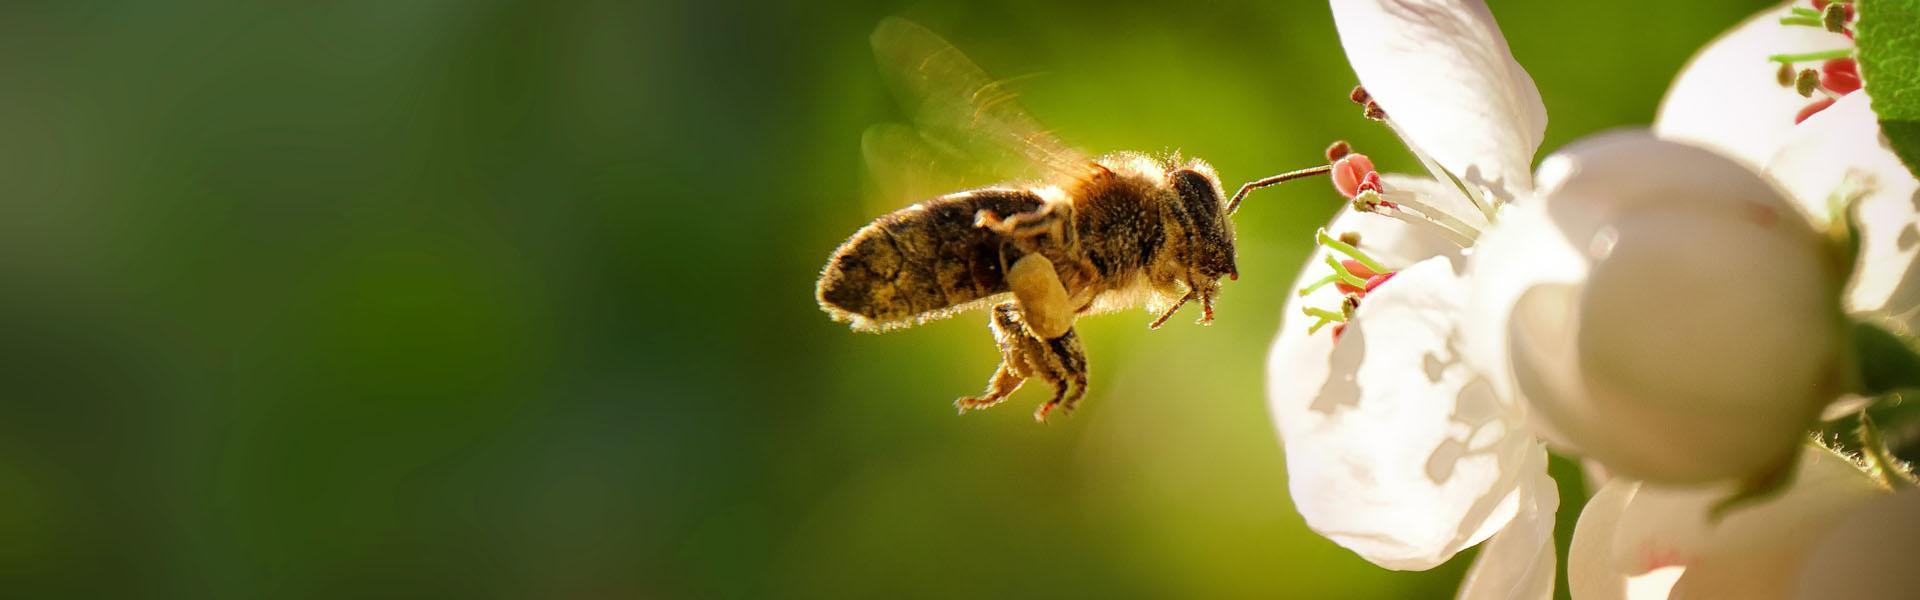 Slajd - 3 - pszczoła